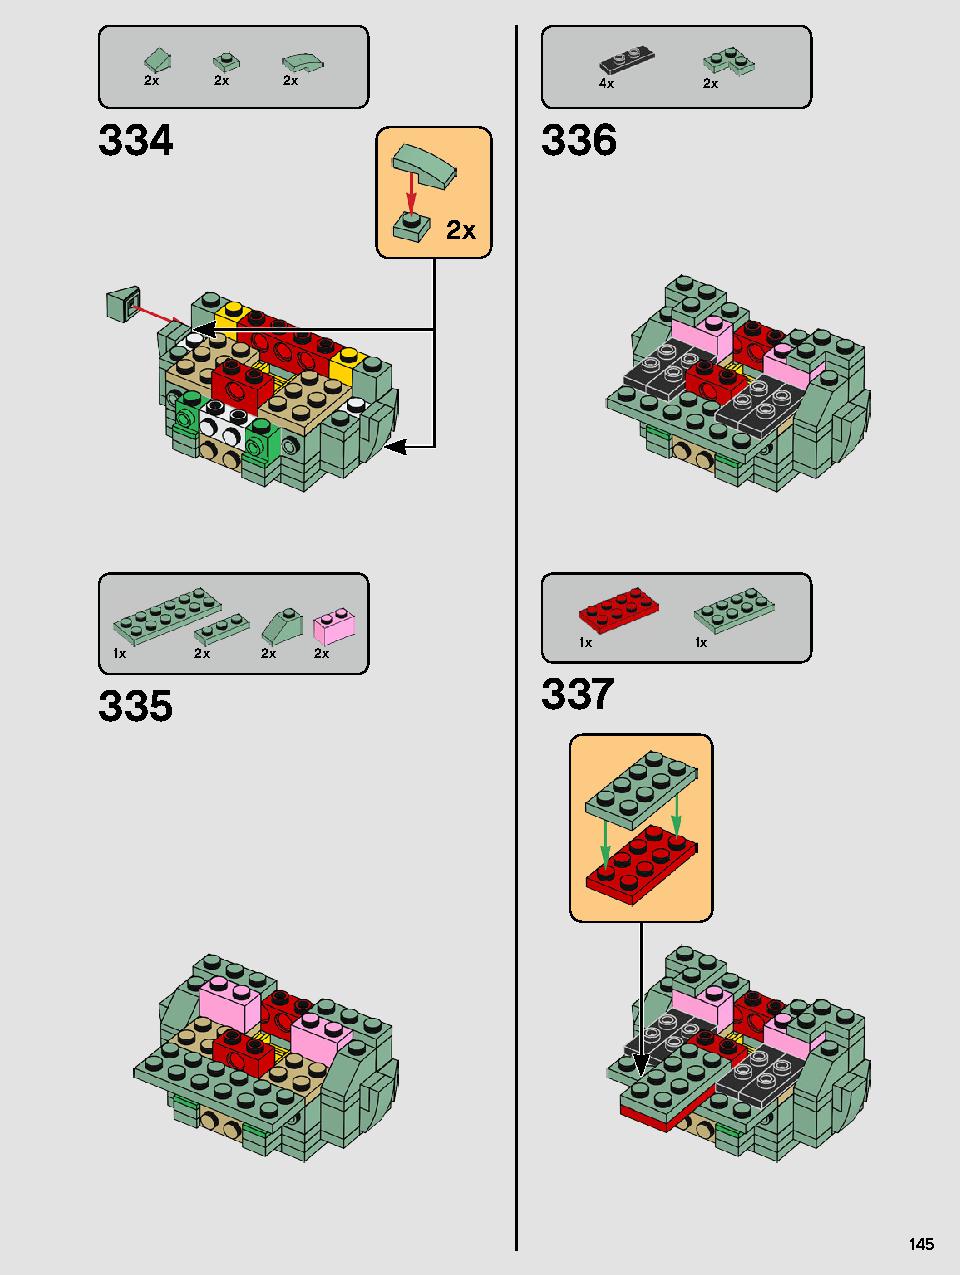 ヨーダ™ 75255 レゴの商品情報 レゴの説明書・組立方法 145 page